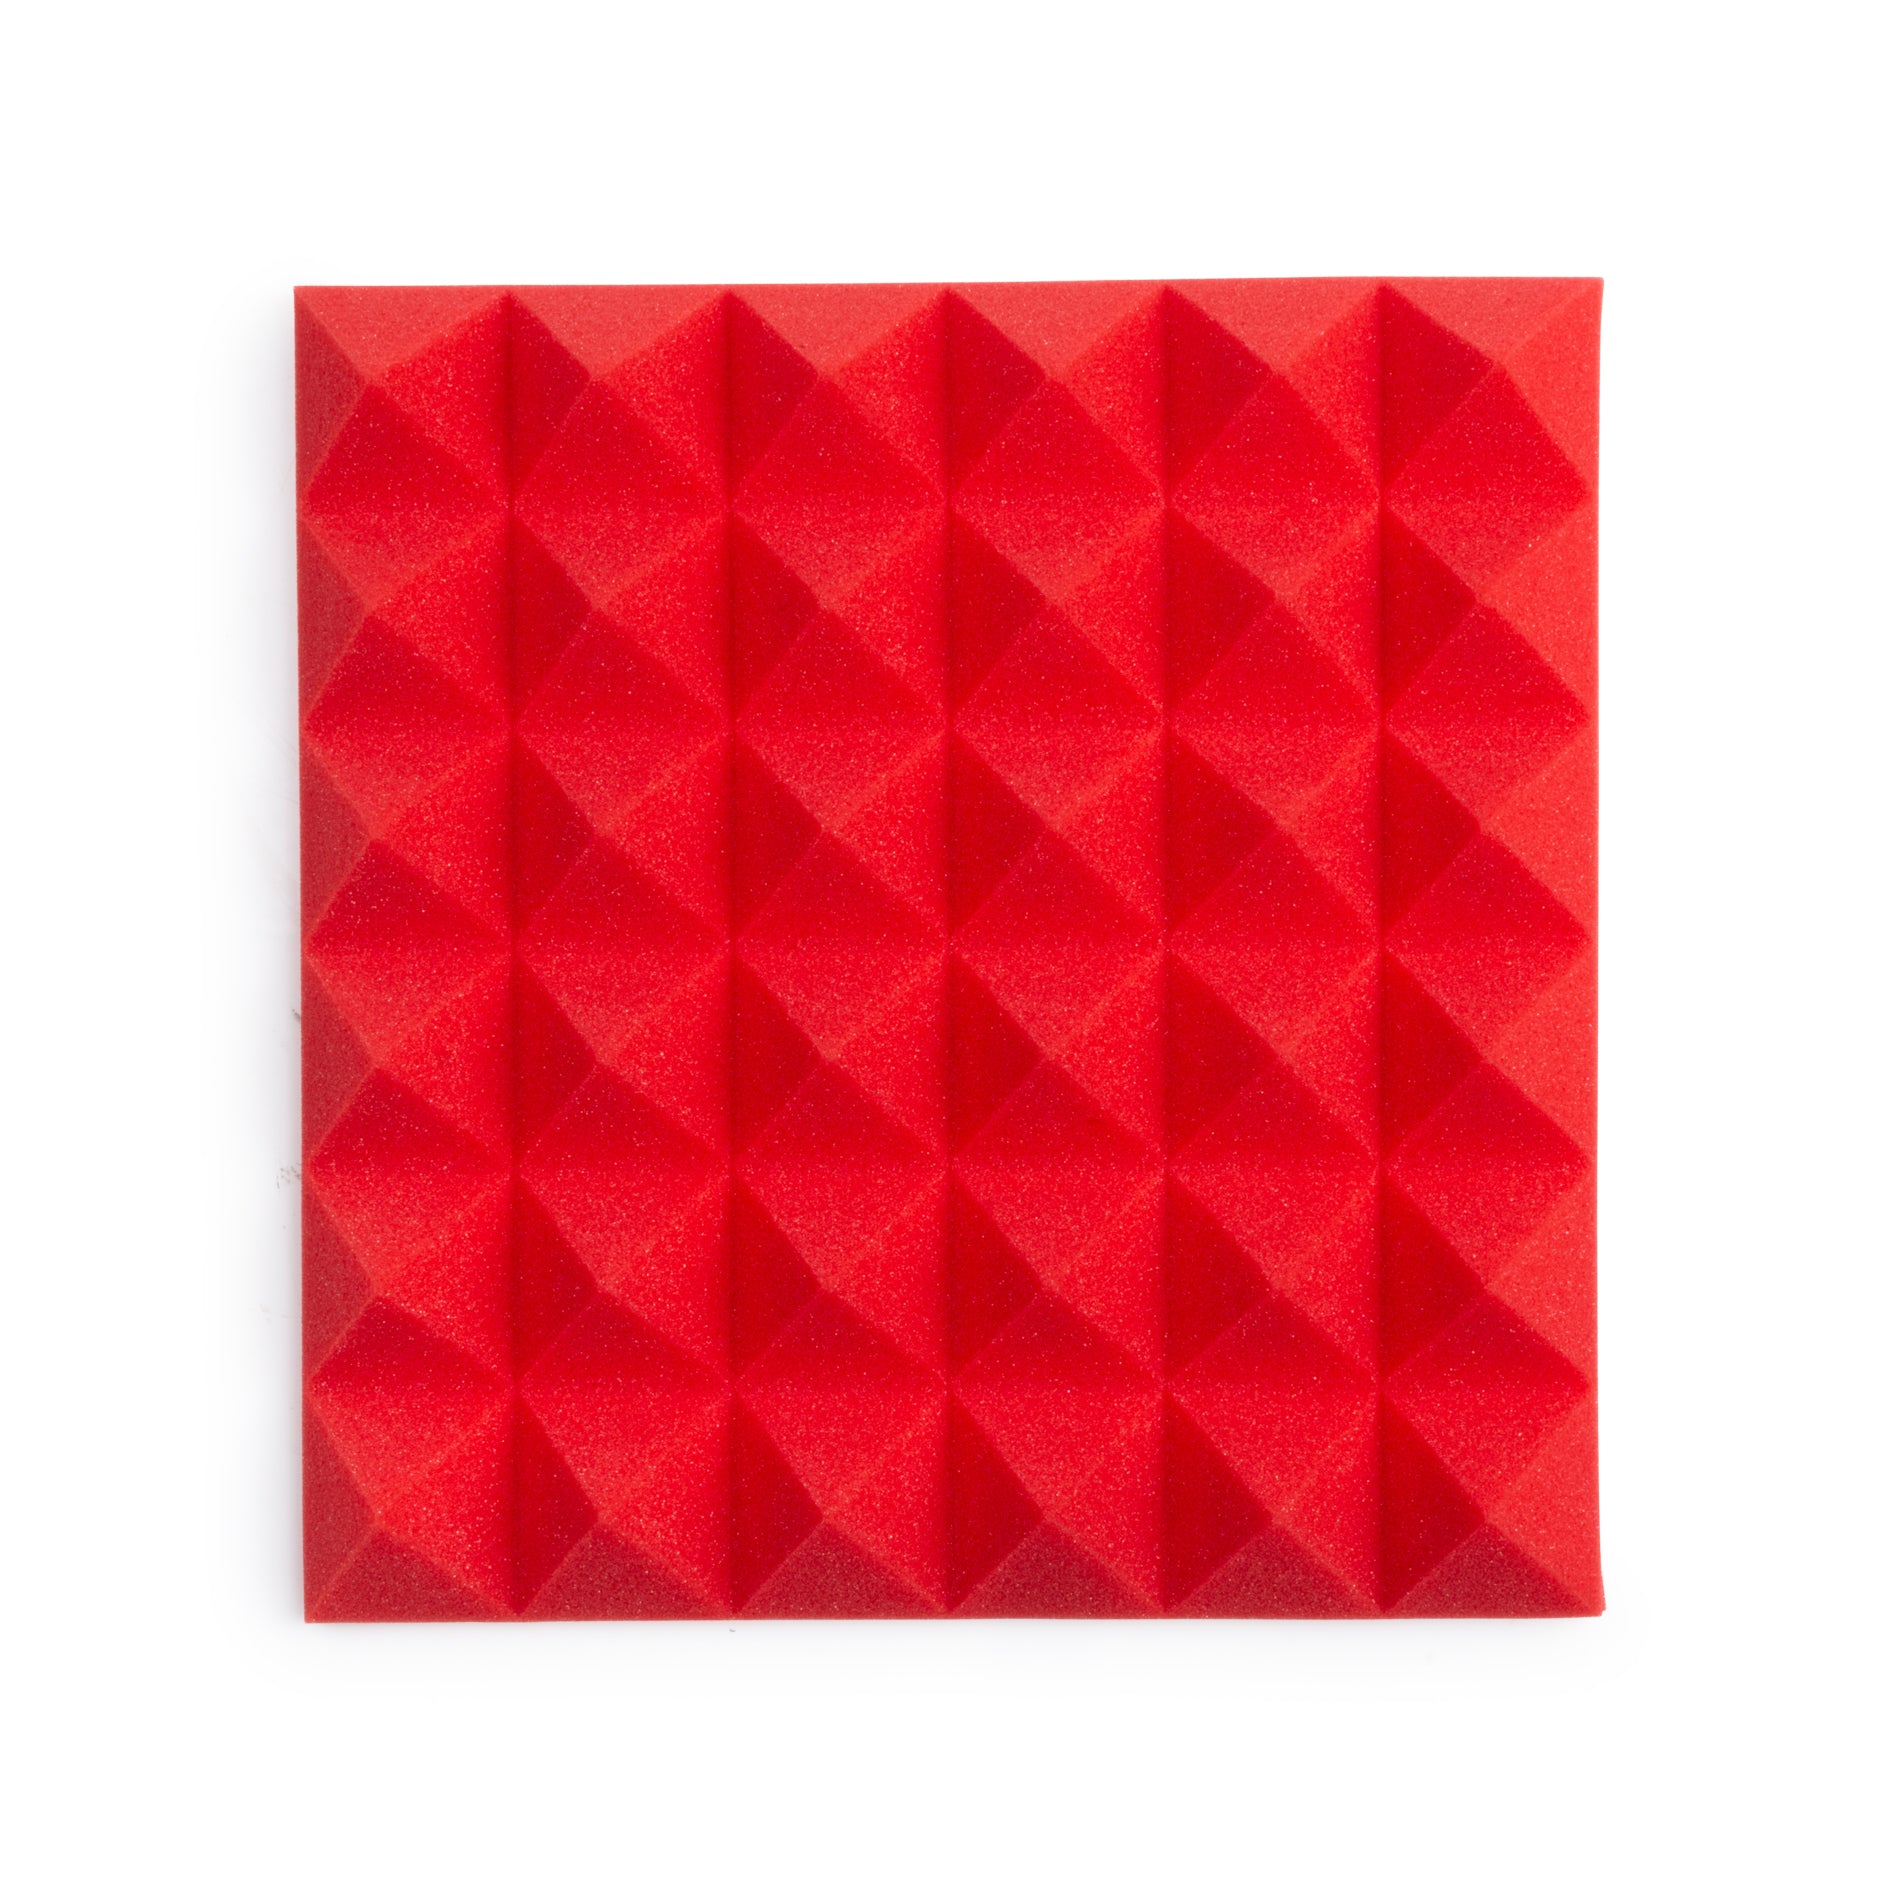 Gator Frameworks | 12"x12" Acoustic Foam Pyramid Panels